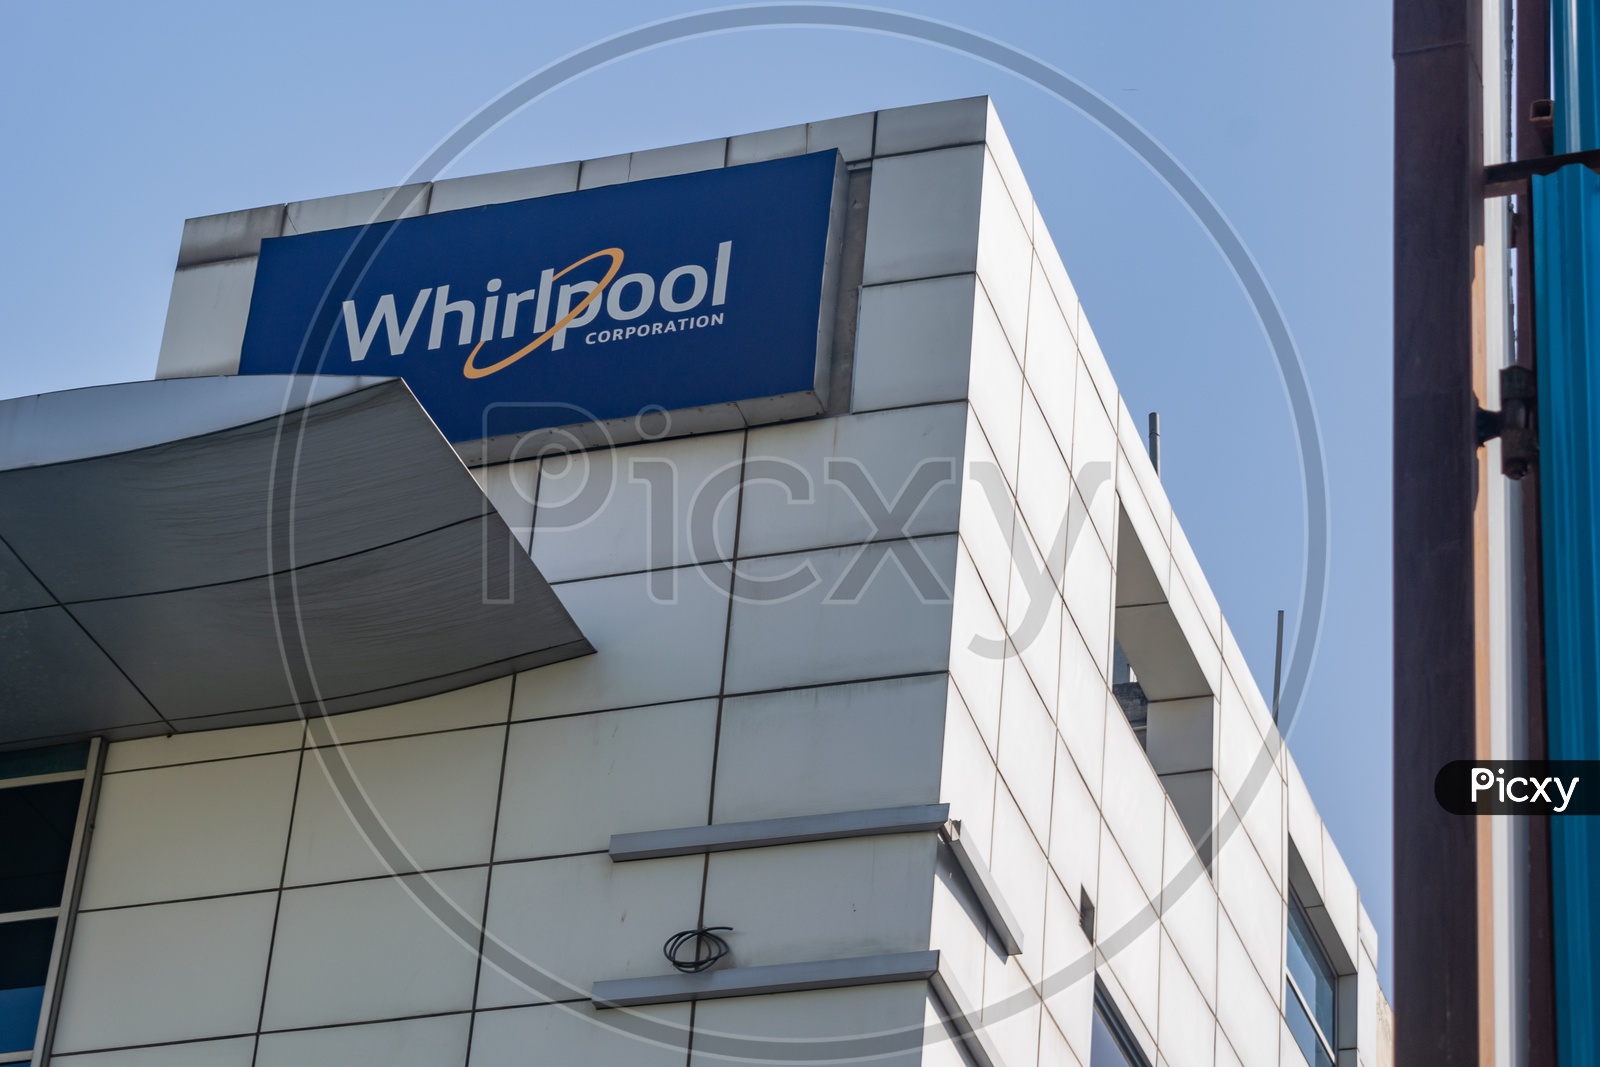 Whirpool Corporate Office, Gurugram, Haryana